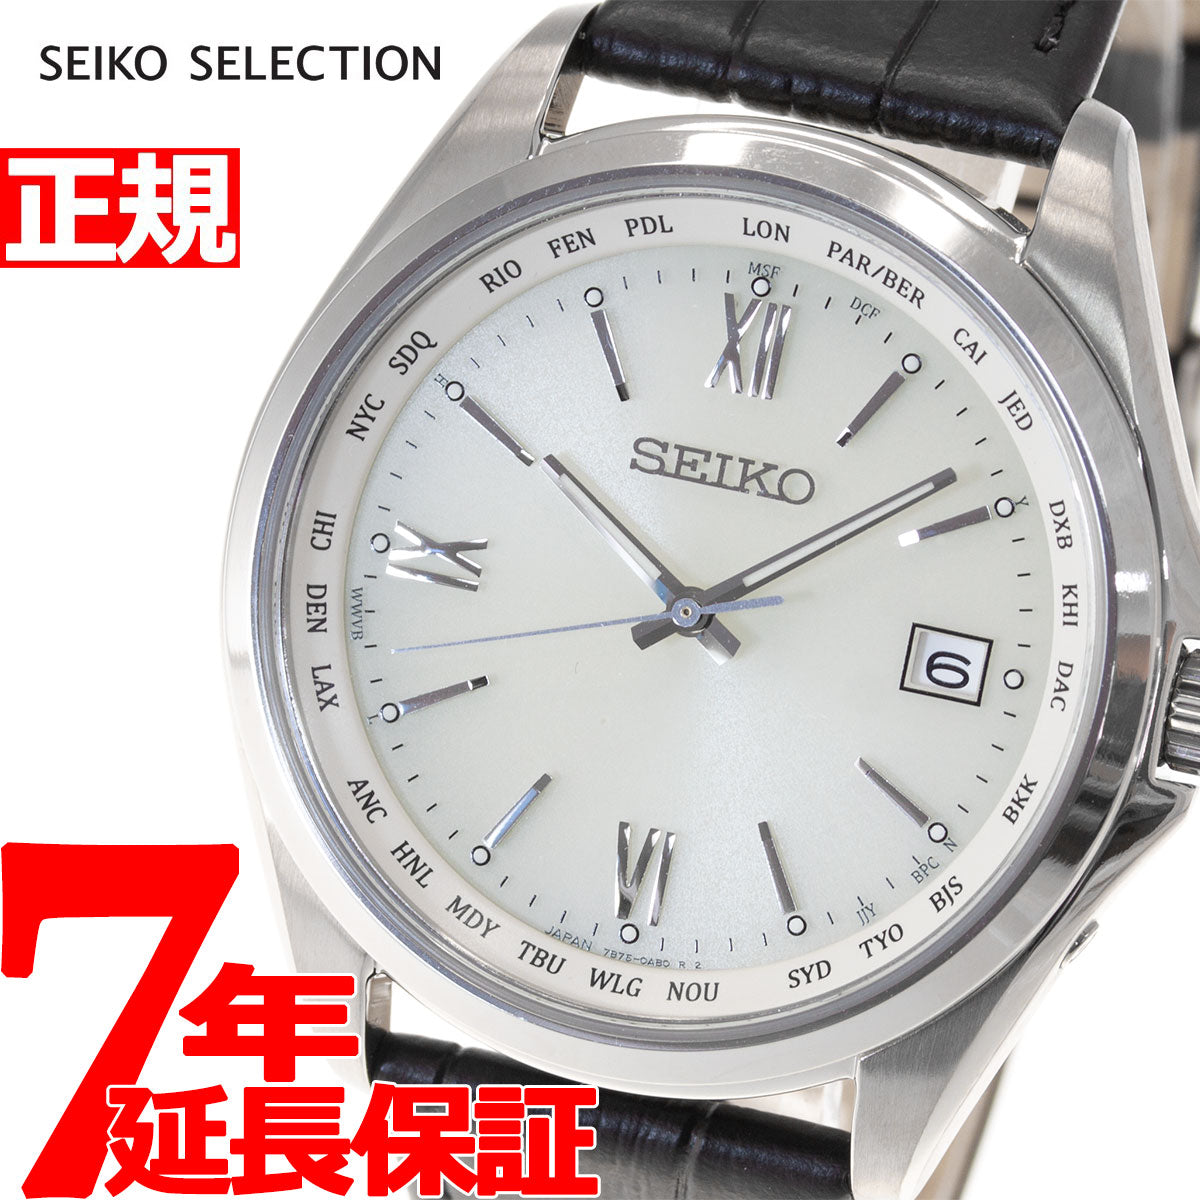 セイコー セレクション SEIKO SELECTION 電波 ソーラー 電波時計 腕時計 メンズ SBTM295 – neel selectshop